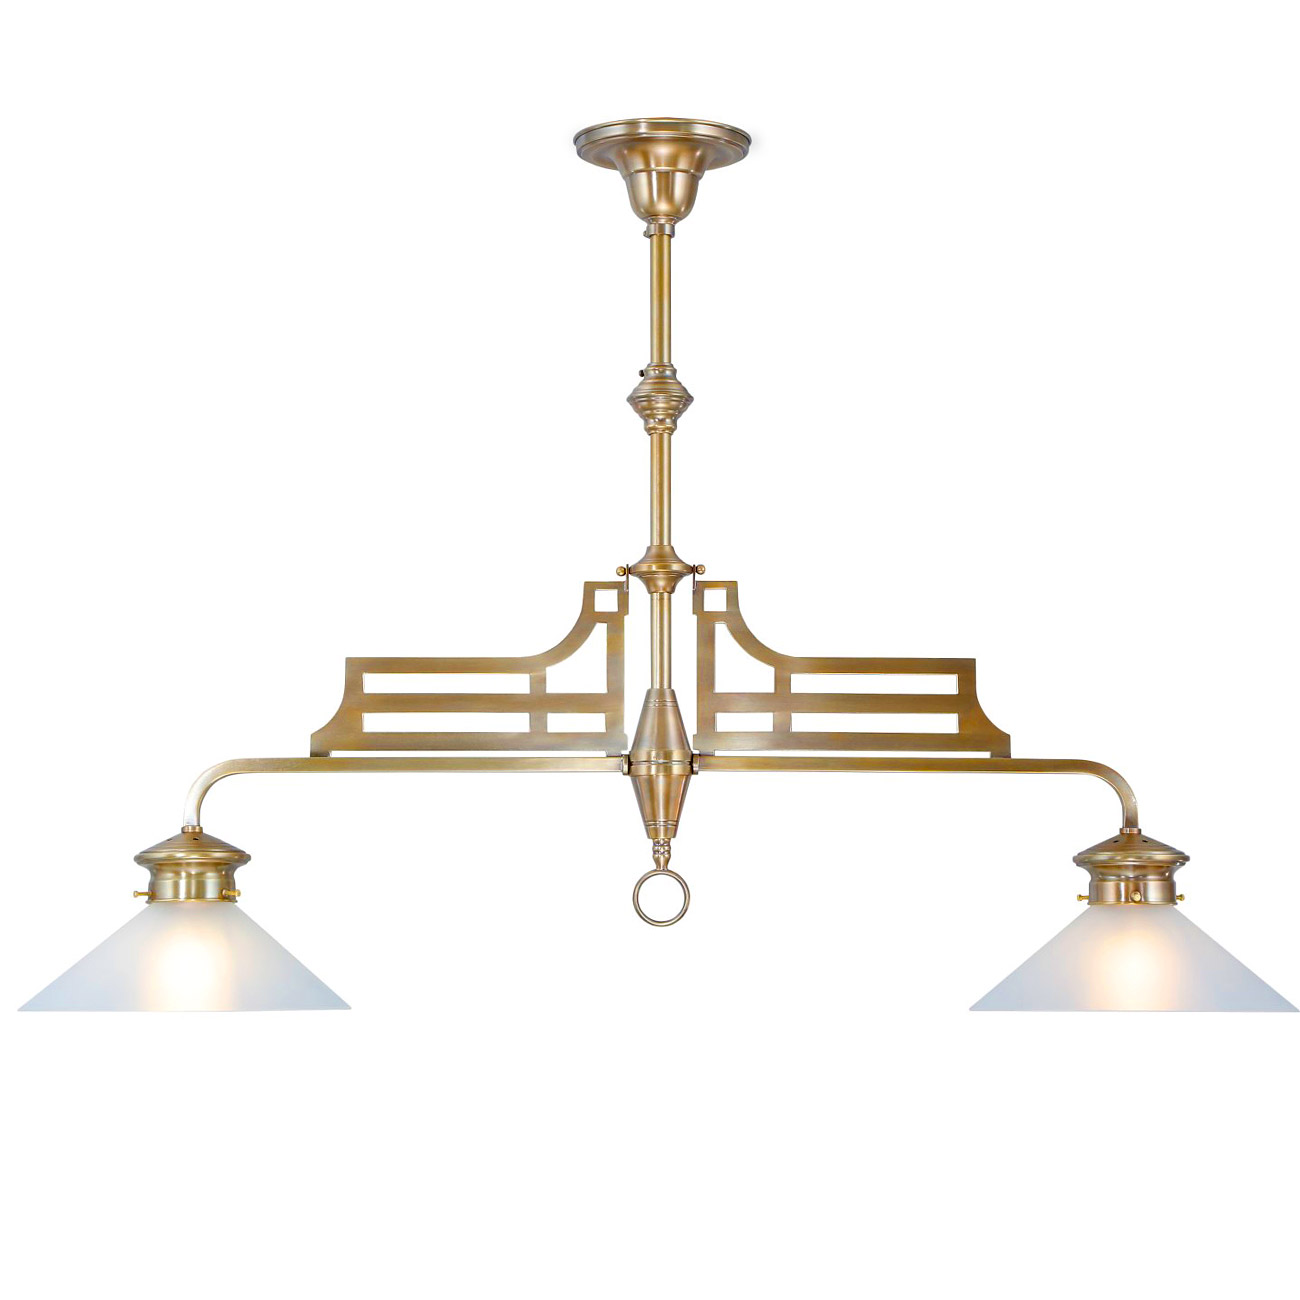 Klassische Billardlampe (Doppel-Pendelleuchte) aus Messing: Die klassische Billard-Lampe aus Messing eignet sich gut zur Tischbeleuchtung